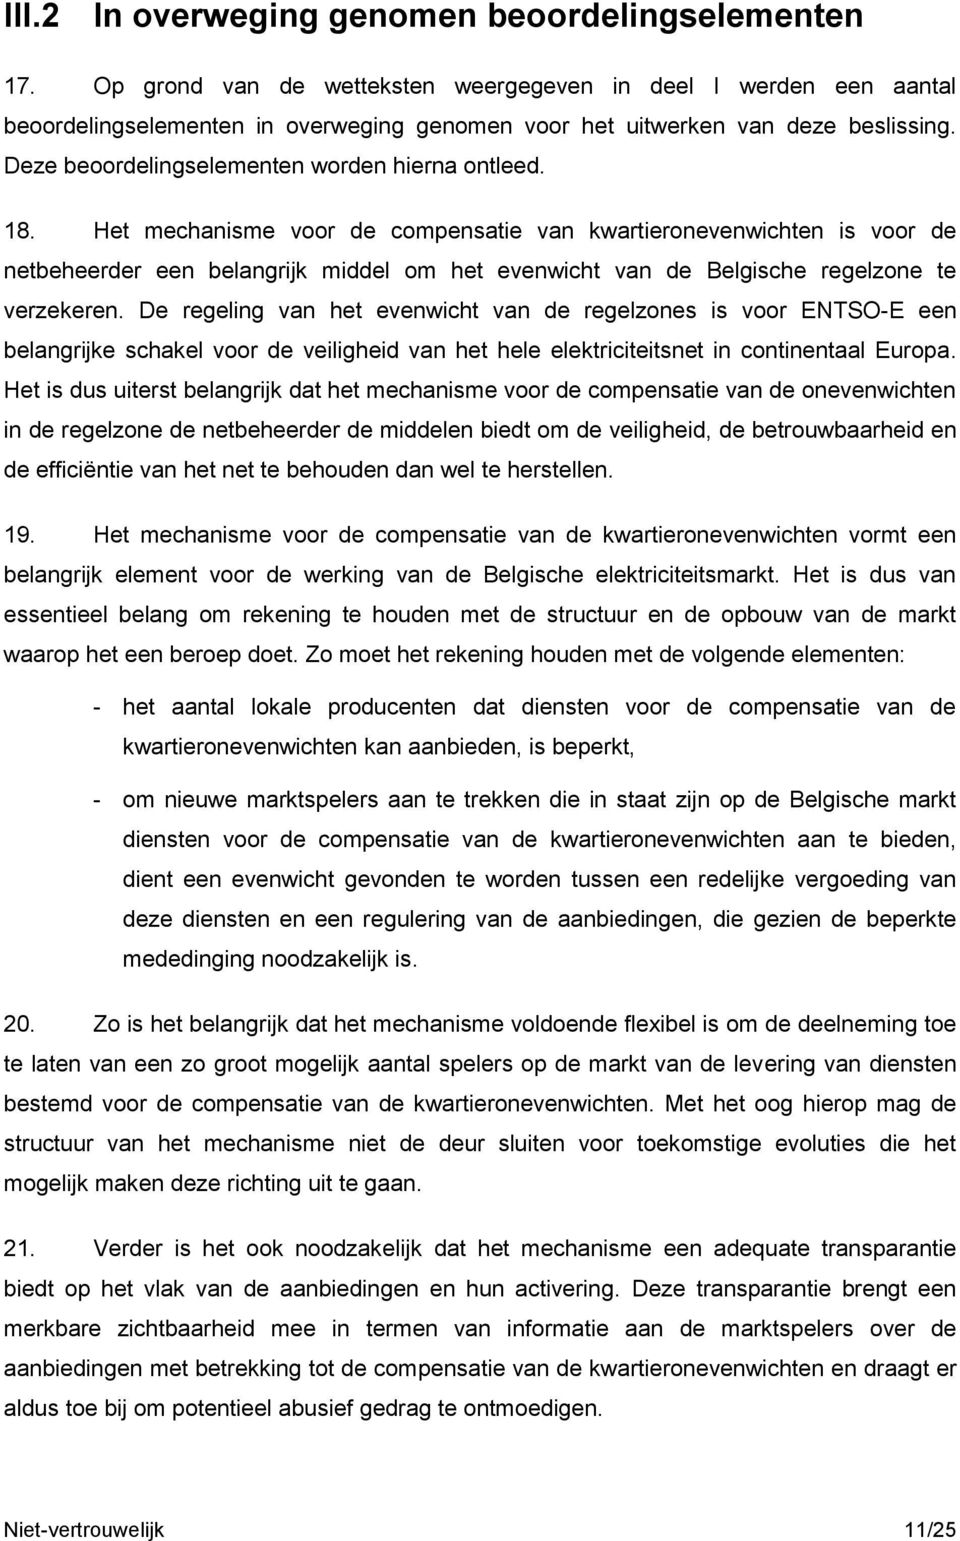 18. Het mechanisme voor de compensatie van kwartieronevenwichten is voor de netbeheerder een belangrijk middel om het evenwicht van de Belgische regelzone te verzekeren.